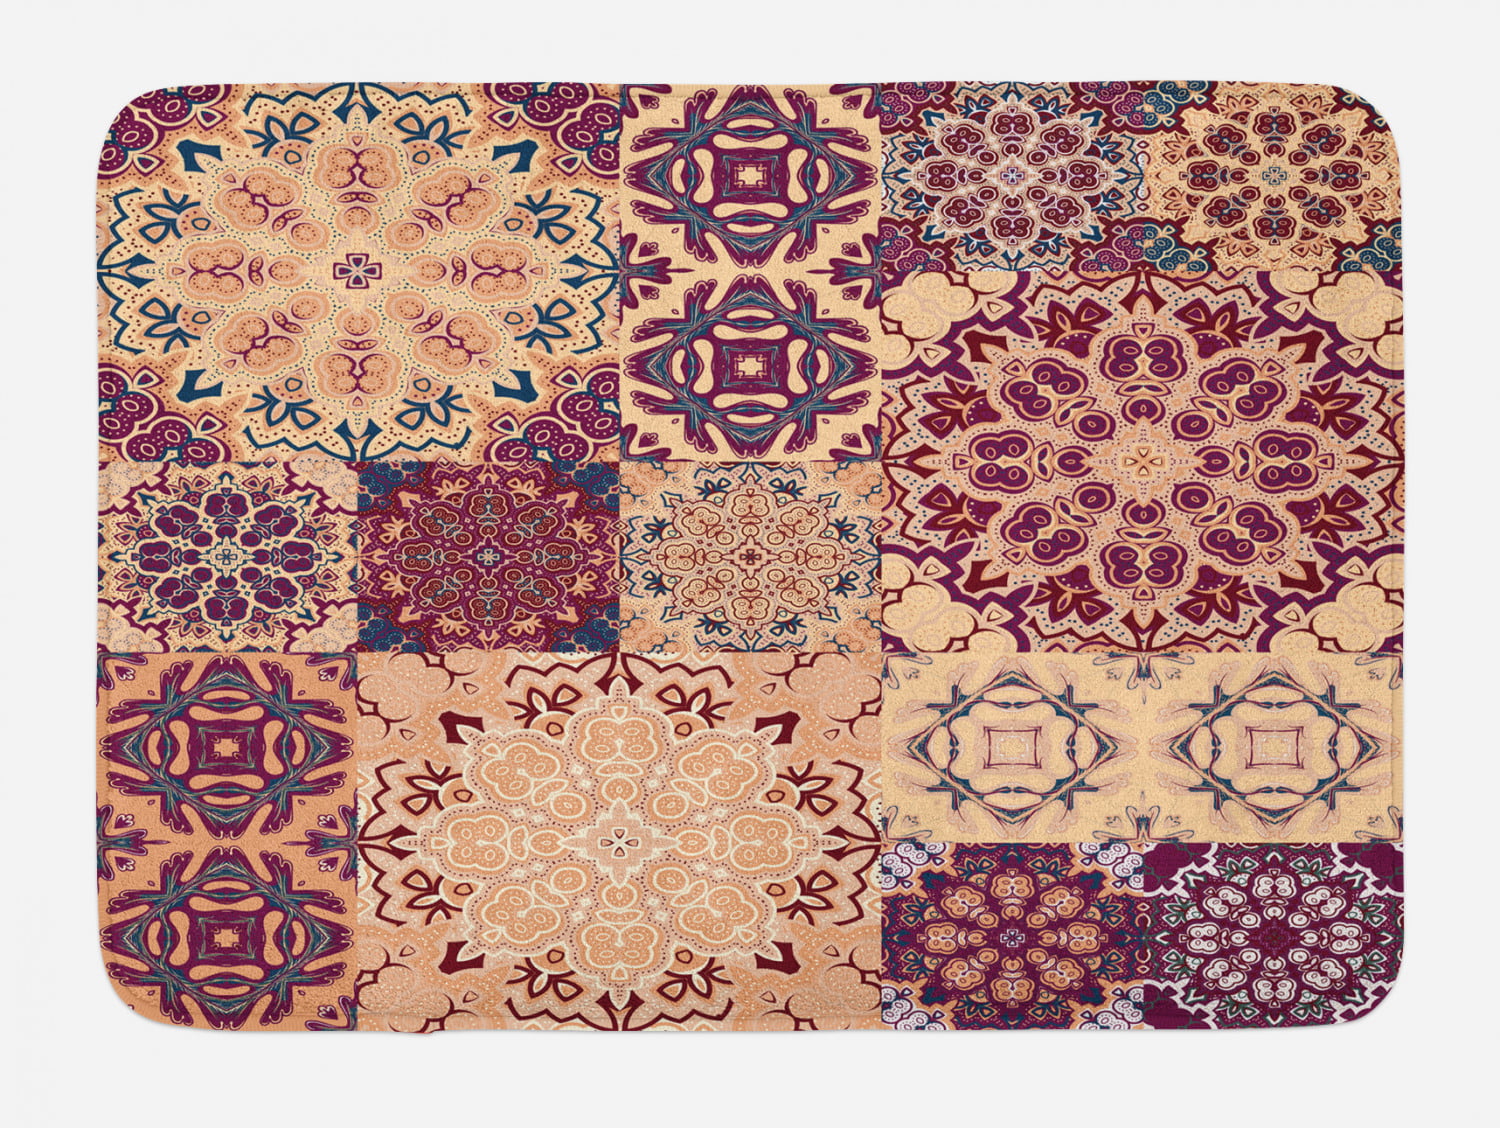 Mandala Dragon Hippie Non-Slip Bathroom Decor Carpet Bath Mat Rug Carpet 24x16" 